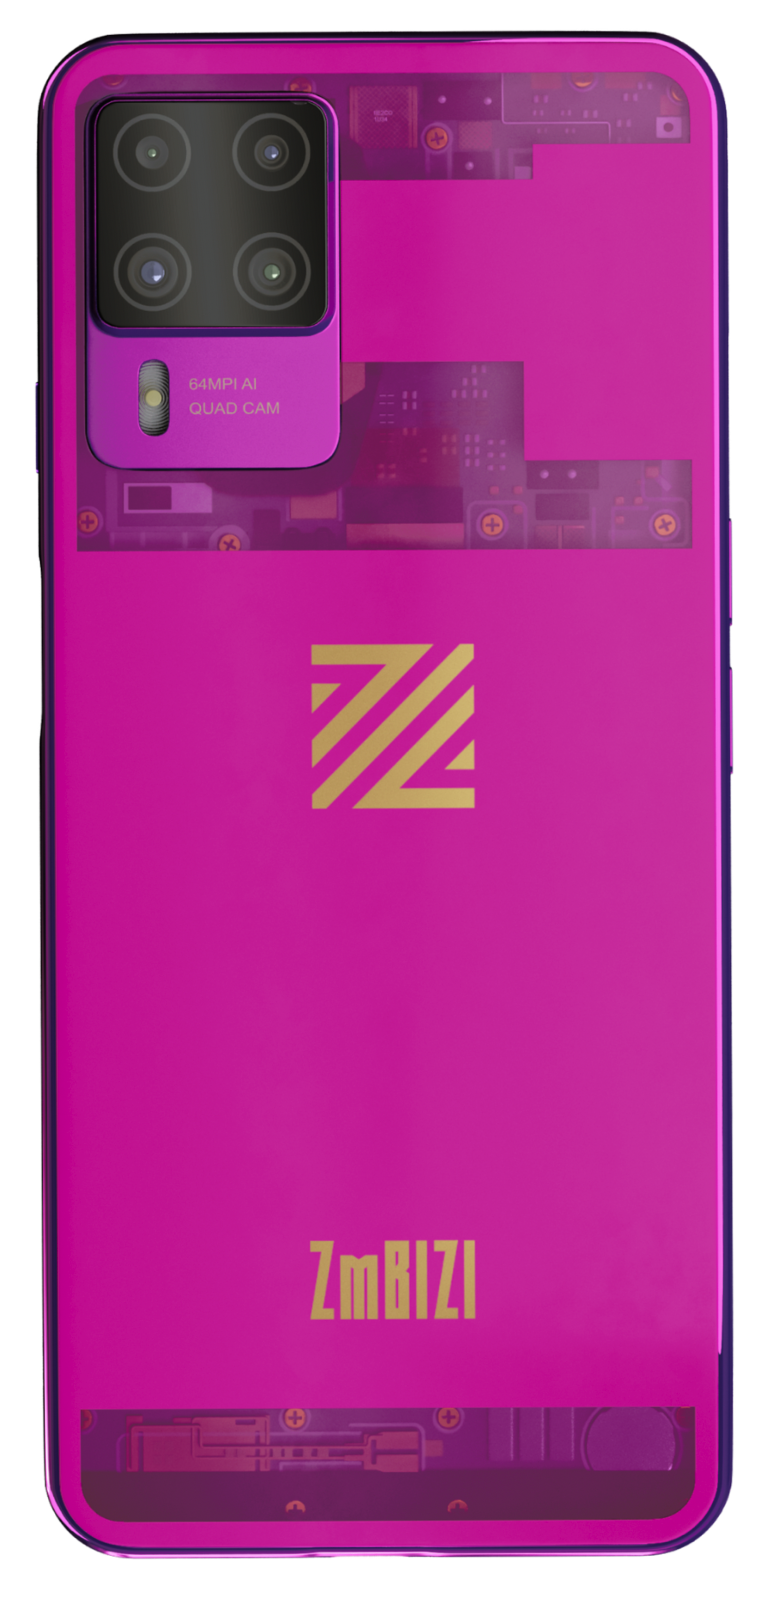 The ZmBIZI 2 pink